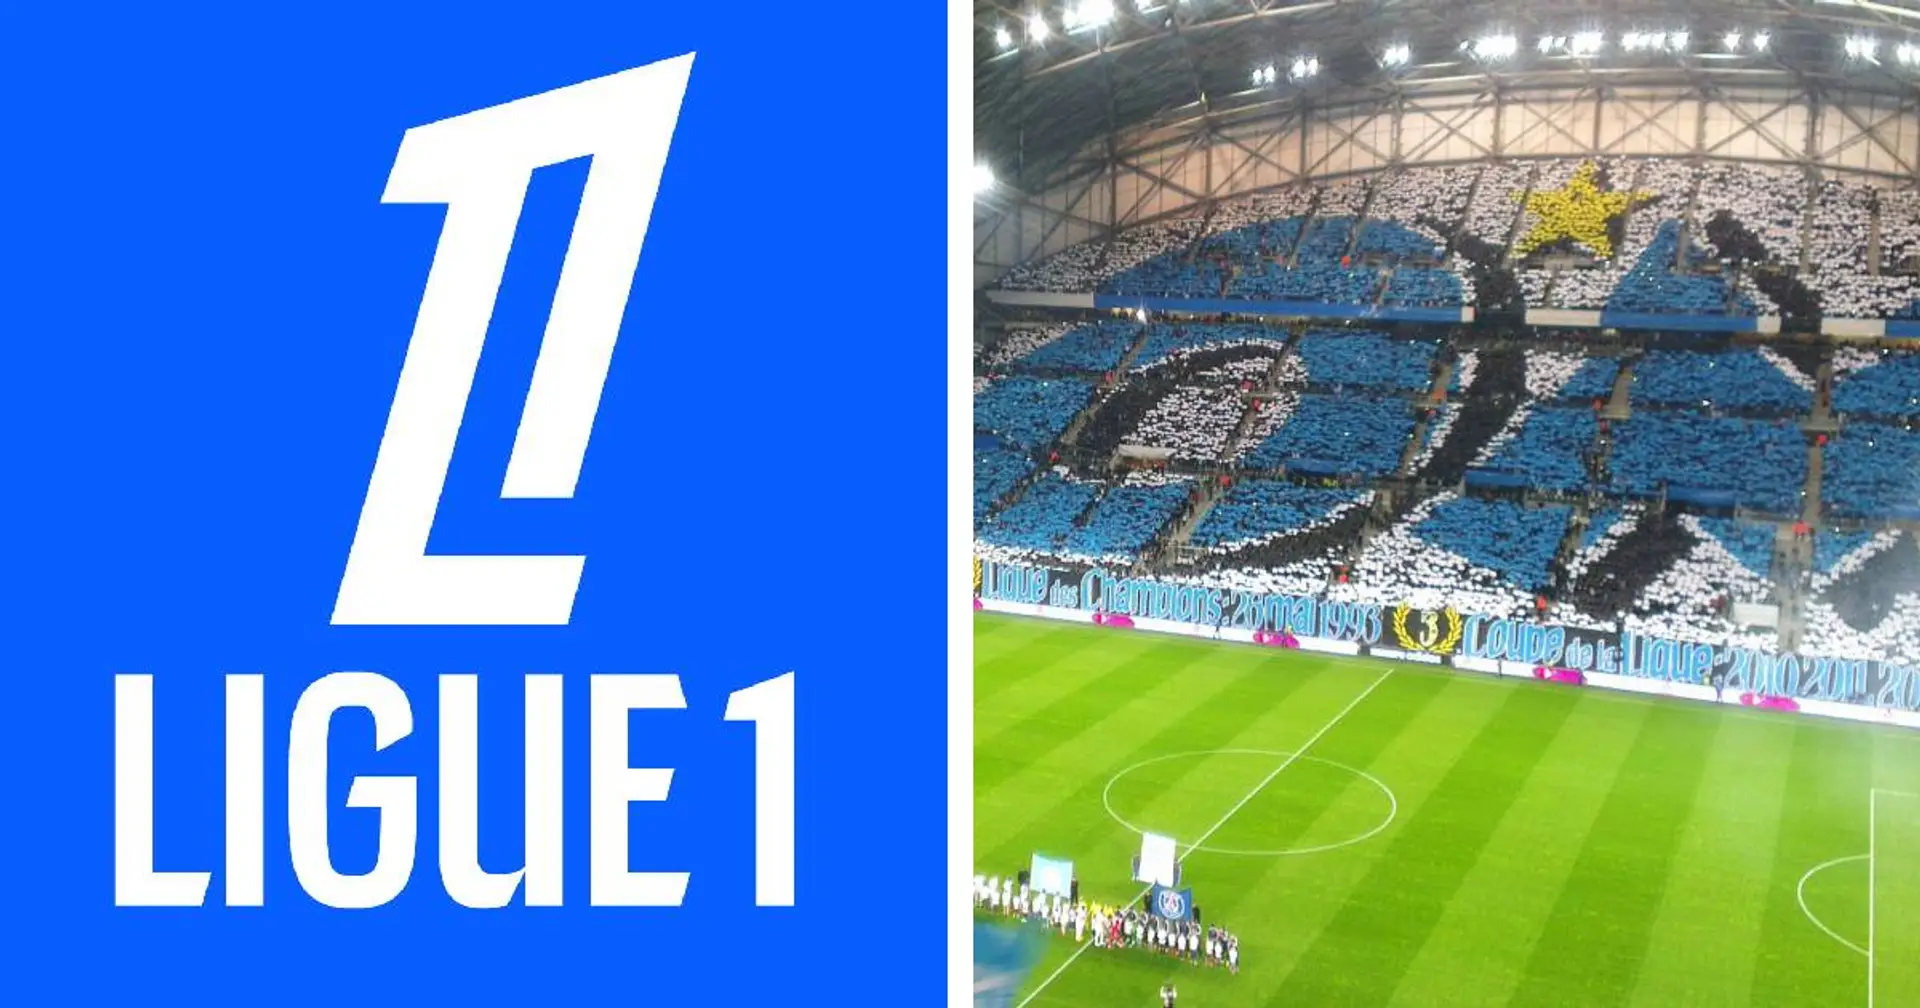 Le CUP en colère contre l'interdiction de déplacement à Marseille et 2 autres actus sous radar du jour